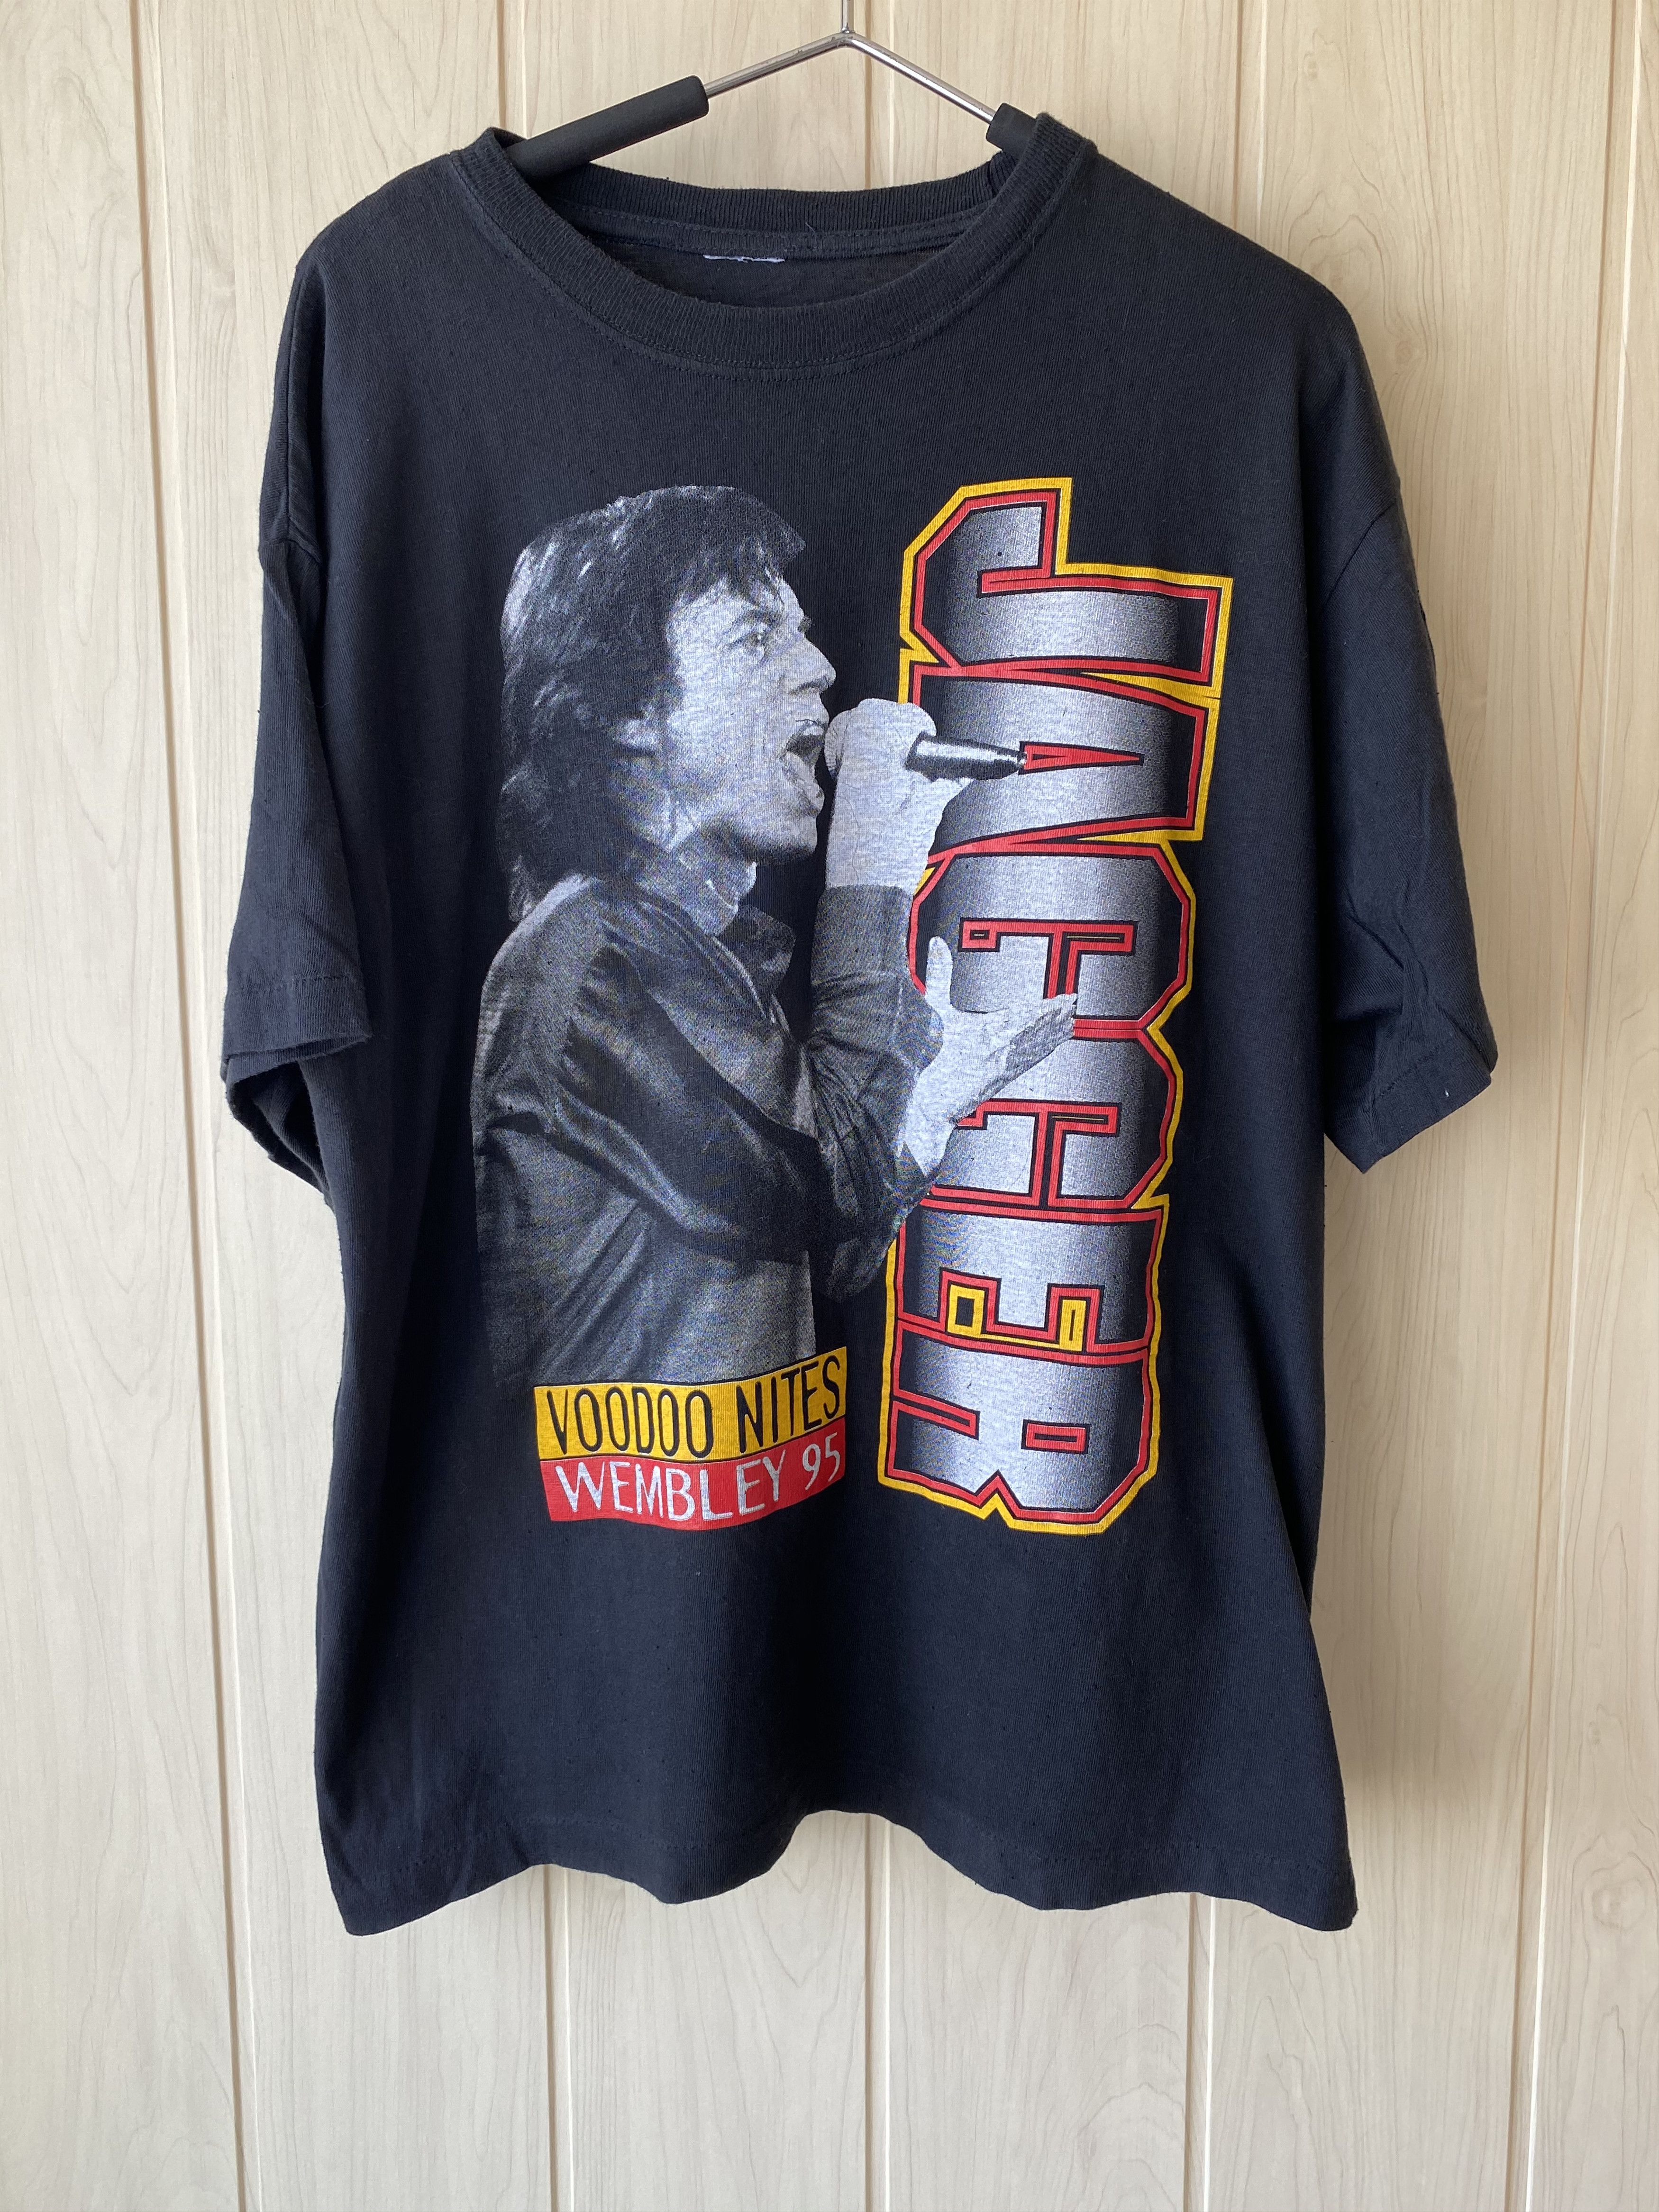 The Rolling Stones Vintage Mick Jagger Voodoo Nites wembley 1995 tee ...